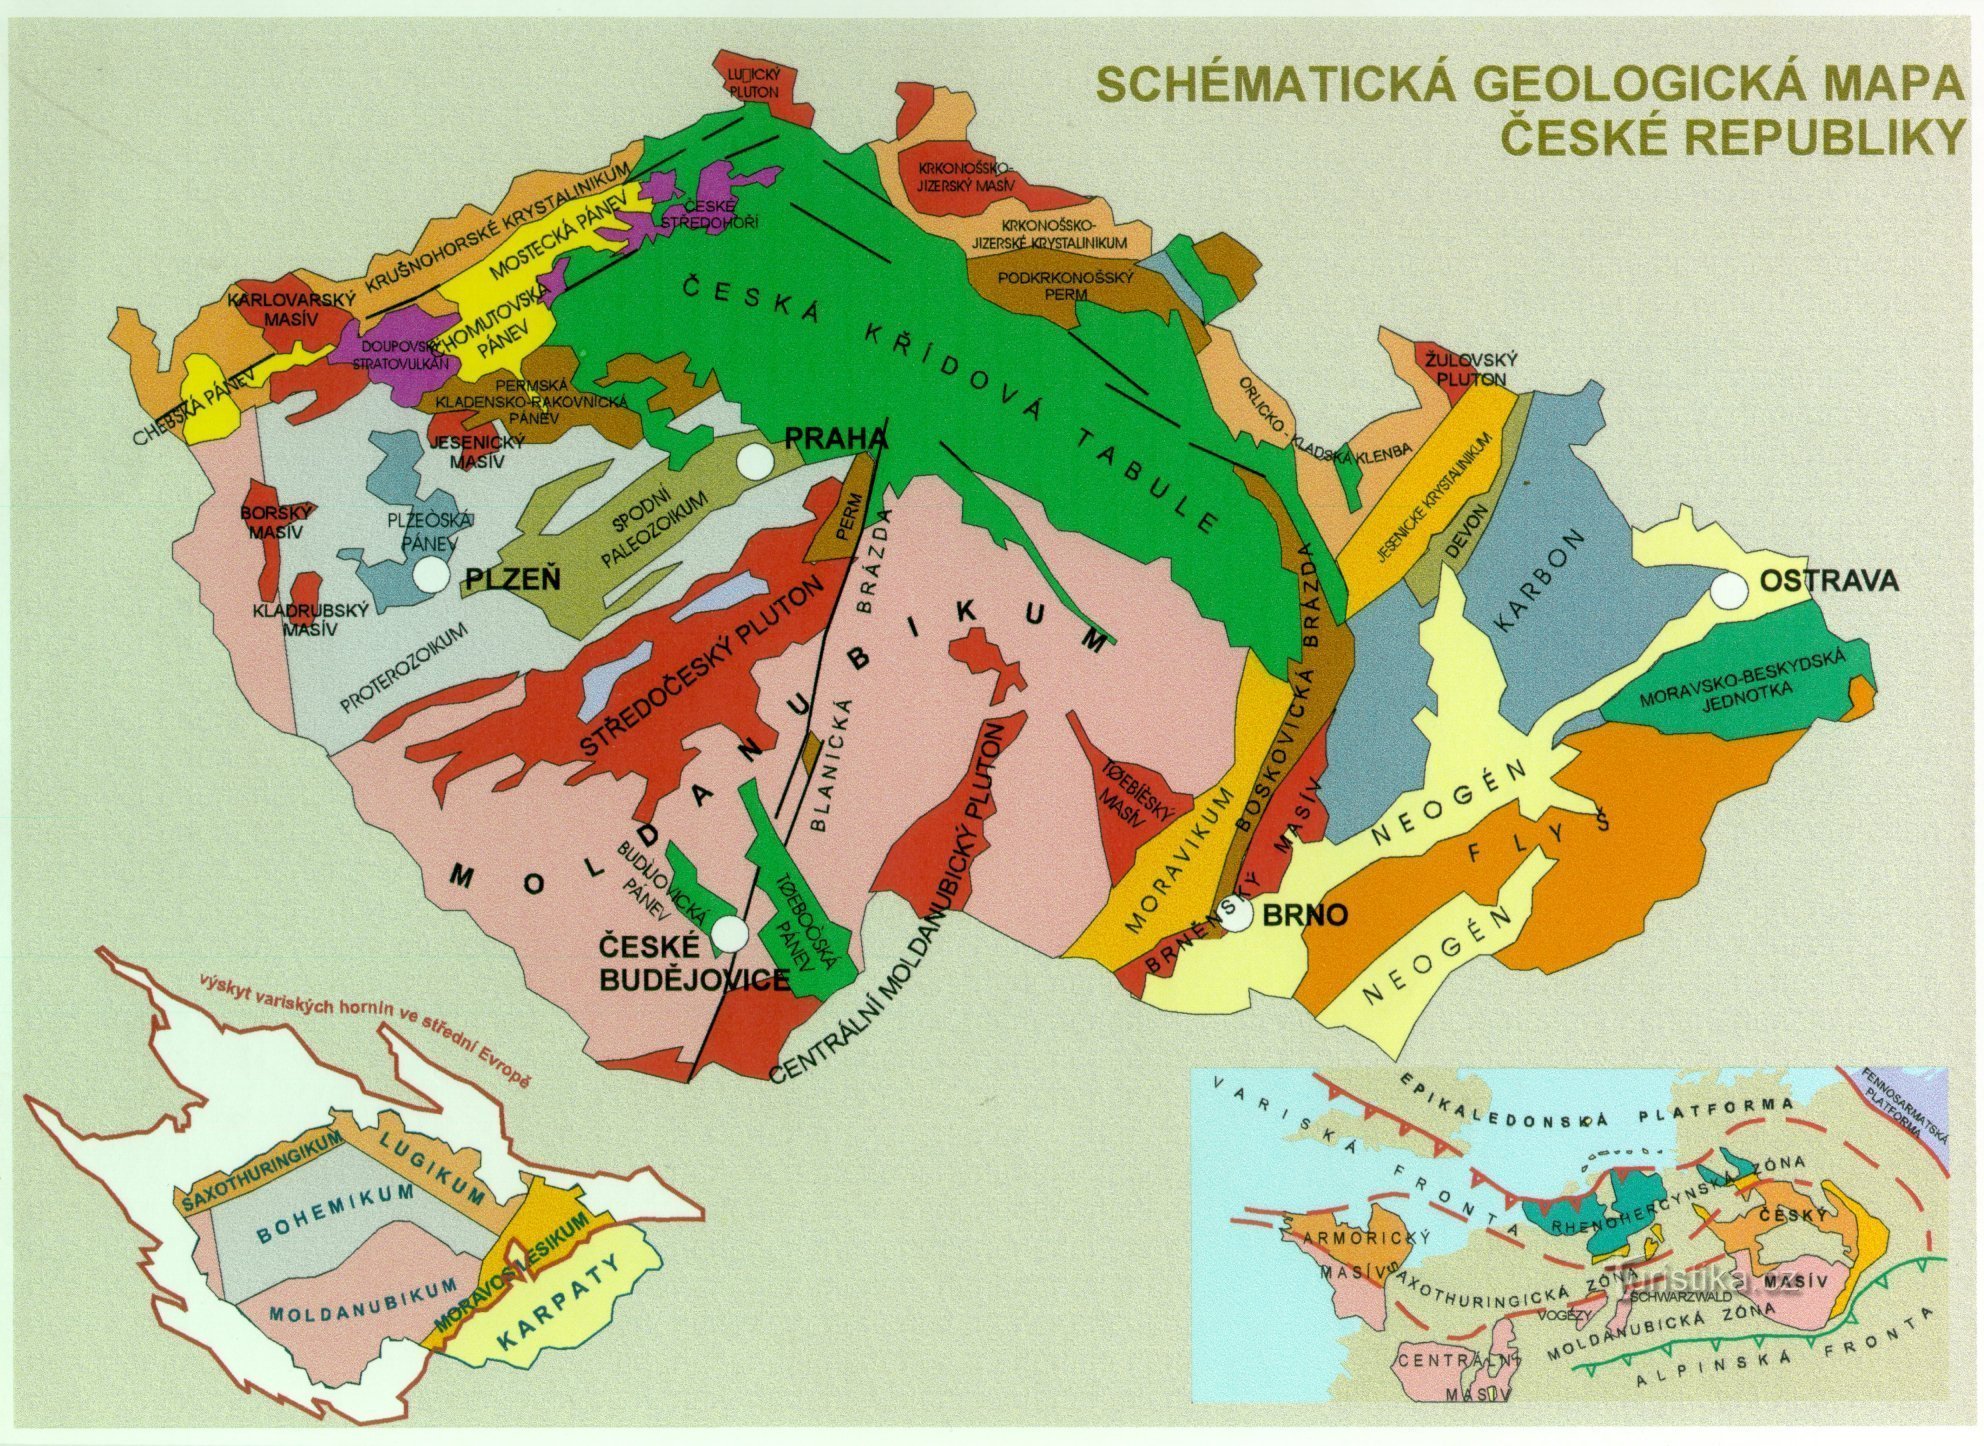 Harta geologică a Republicii Cehe - imagine suplimentară la text (de la https://www.ig.